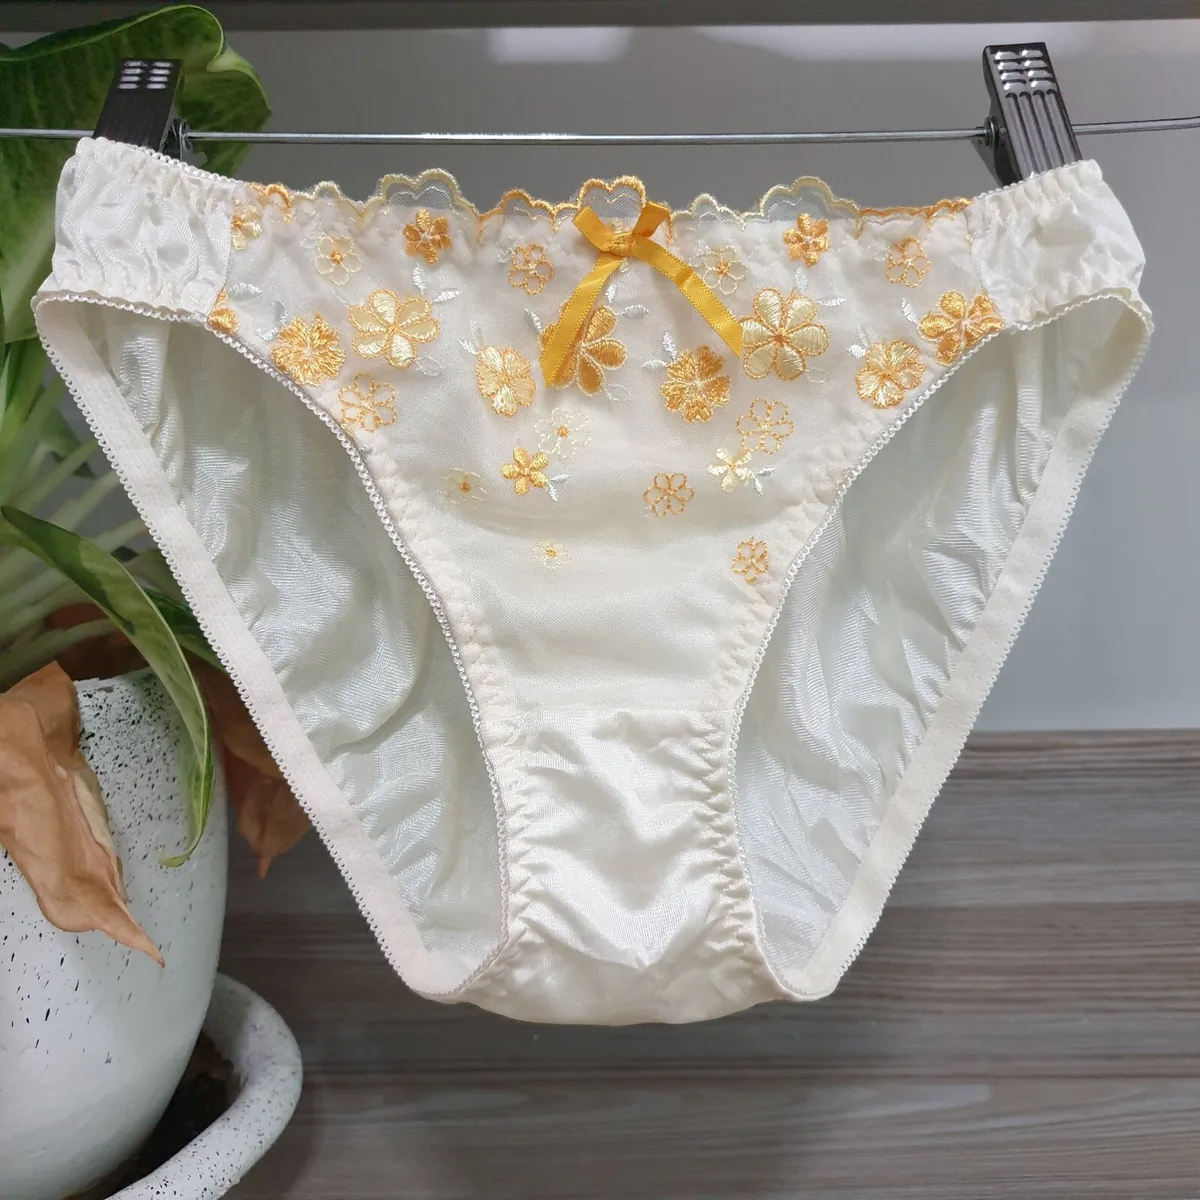 devansh dubey recommends white lace panties tumblr pic